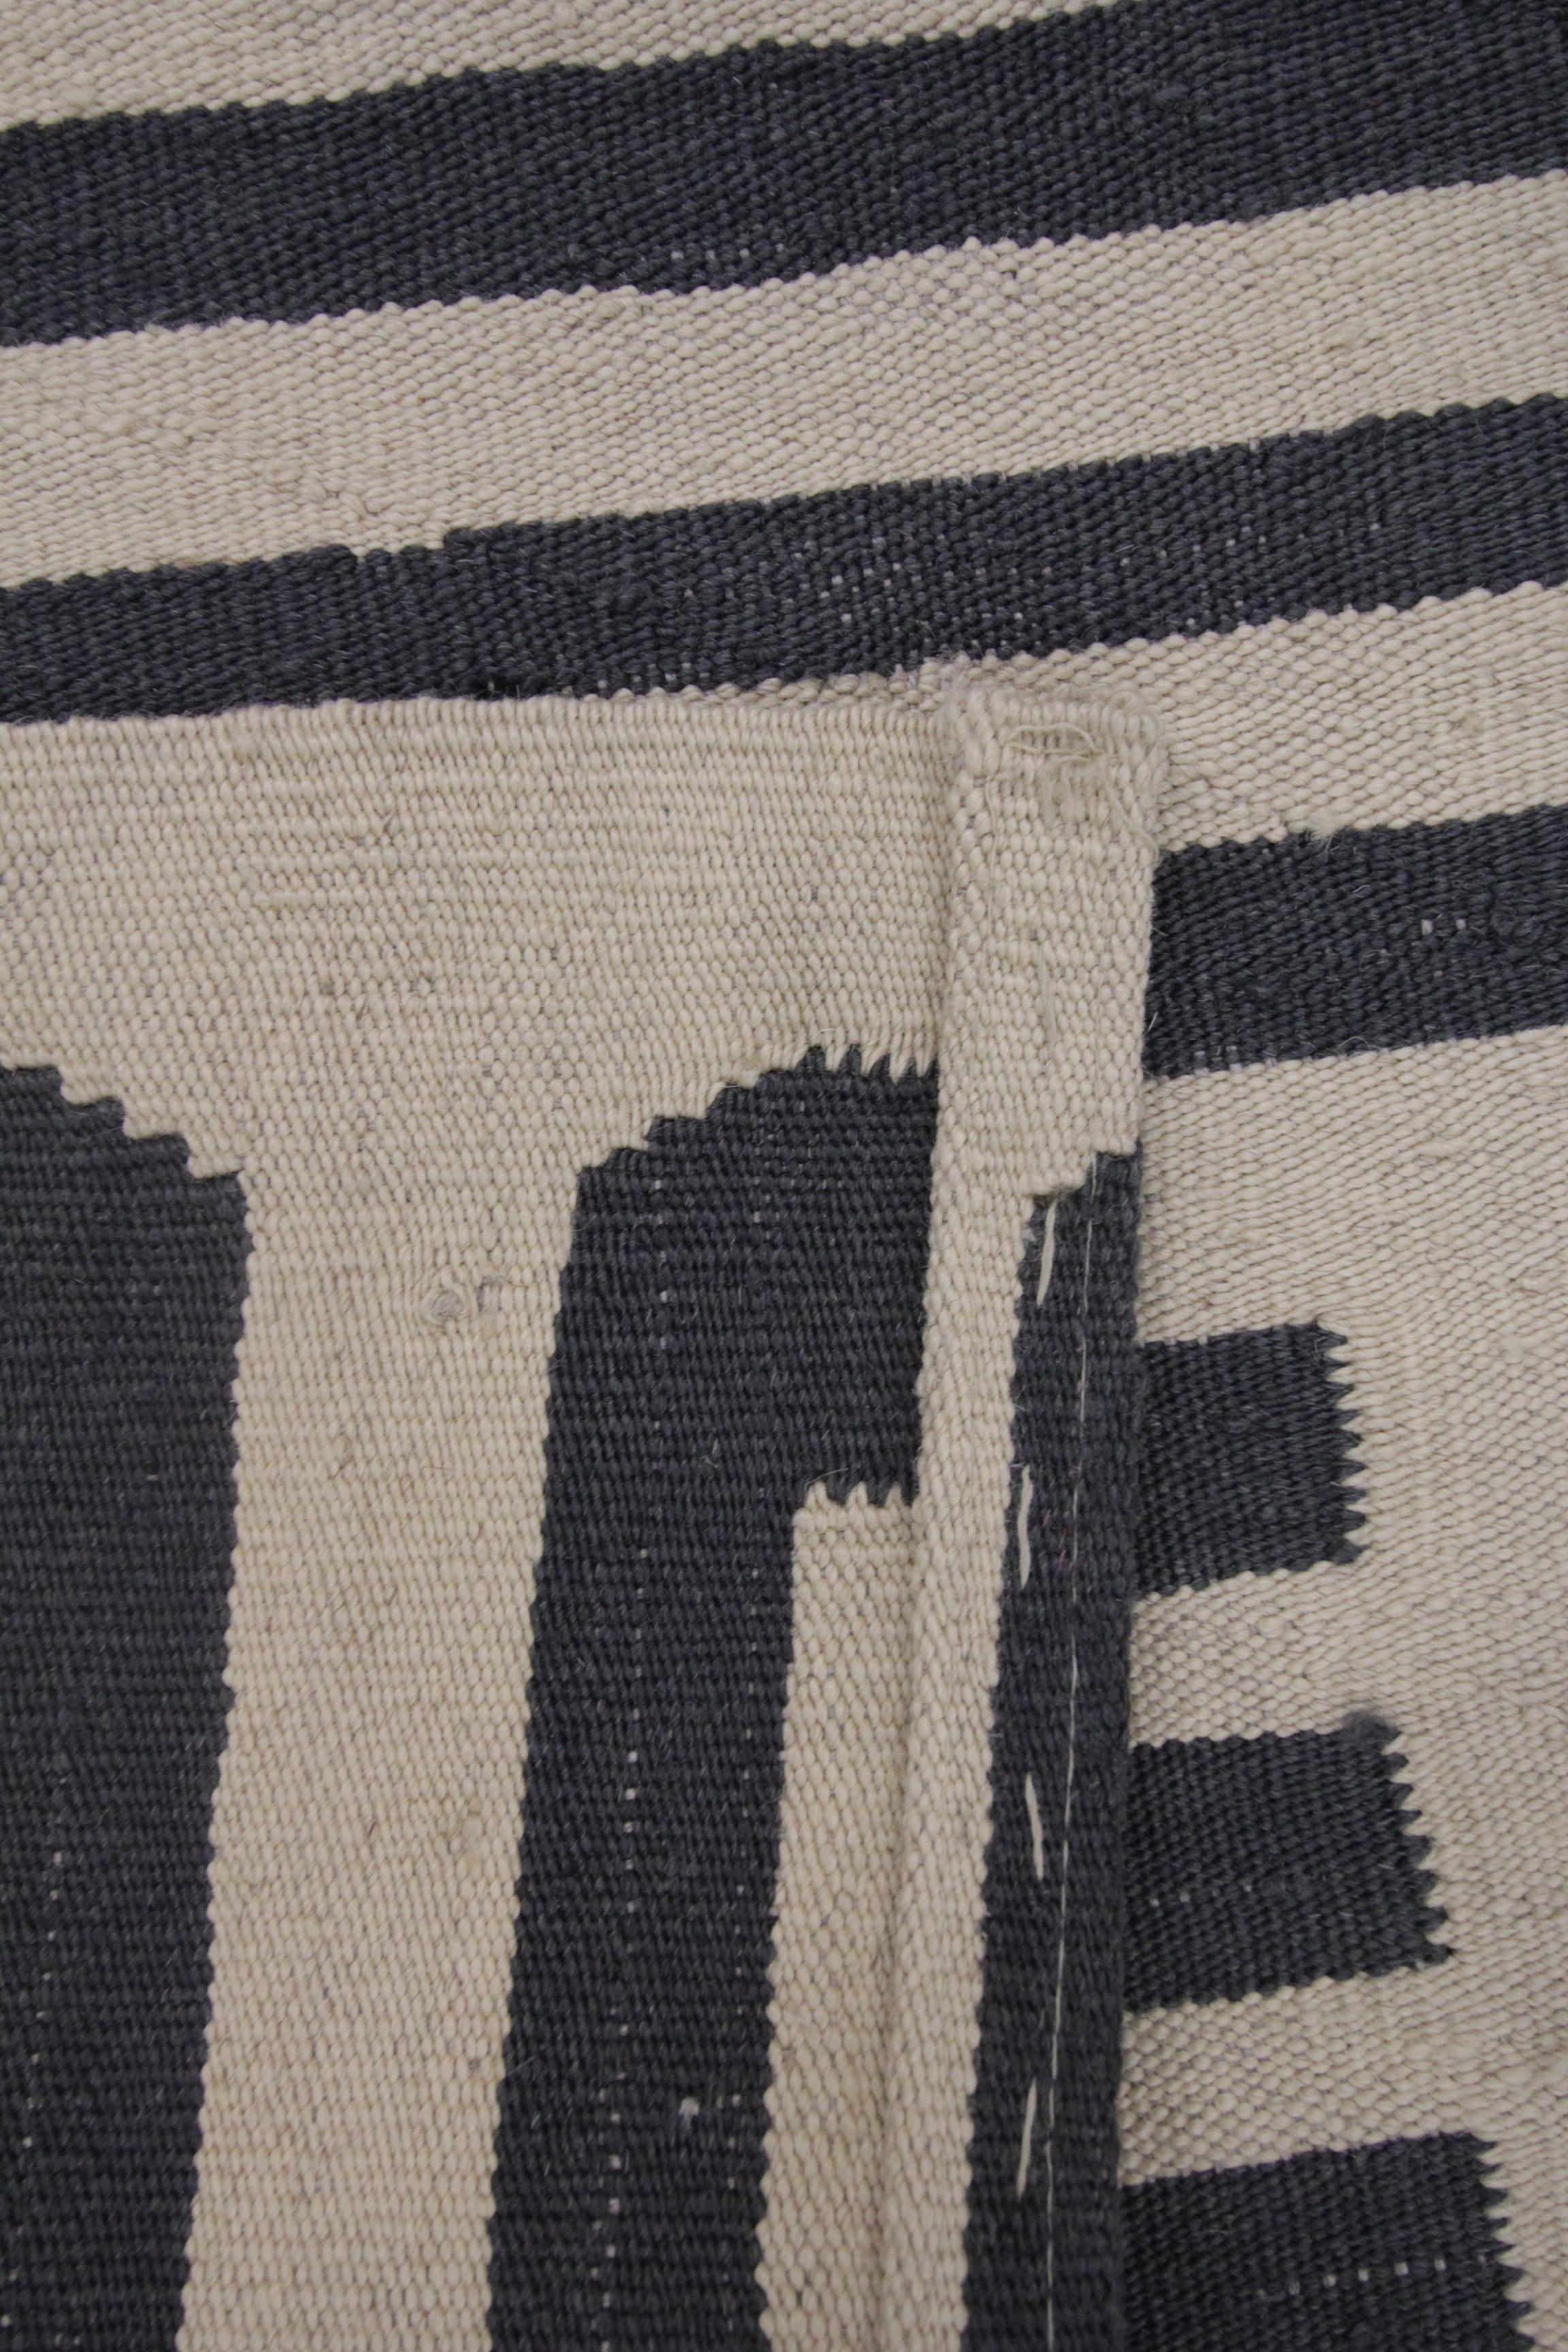 Modern Kilim Rug Geometric Kilim Area Rug Wool Cream Grey Rug 180 x 225cm For Sale 1